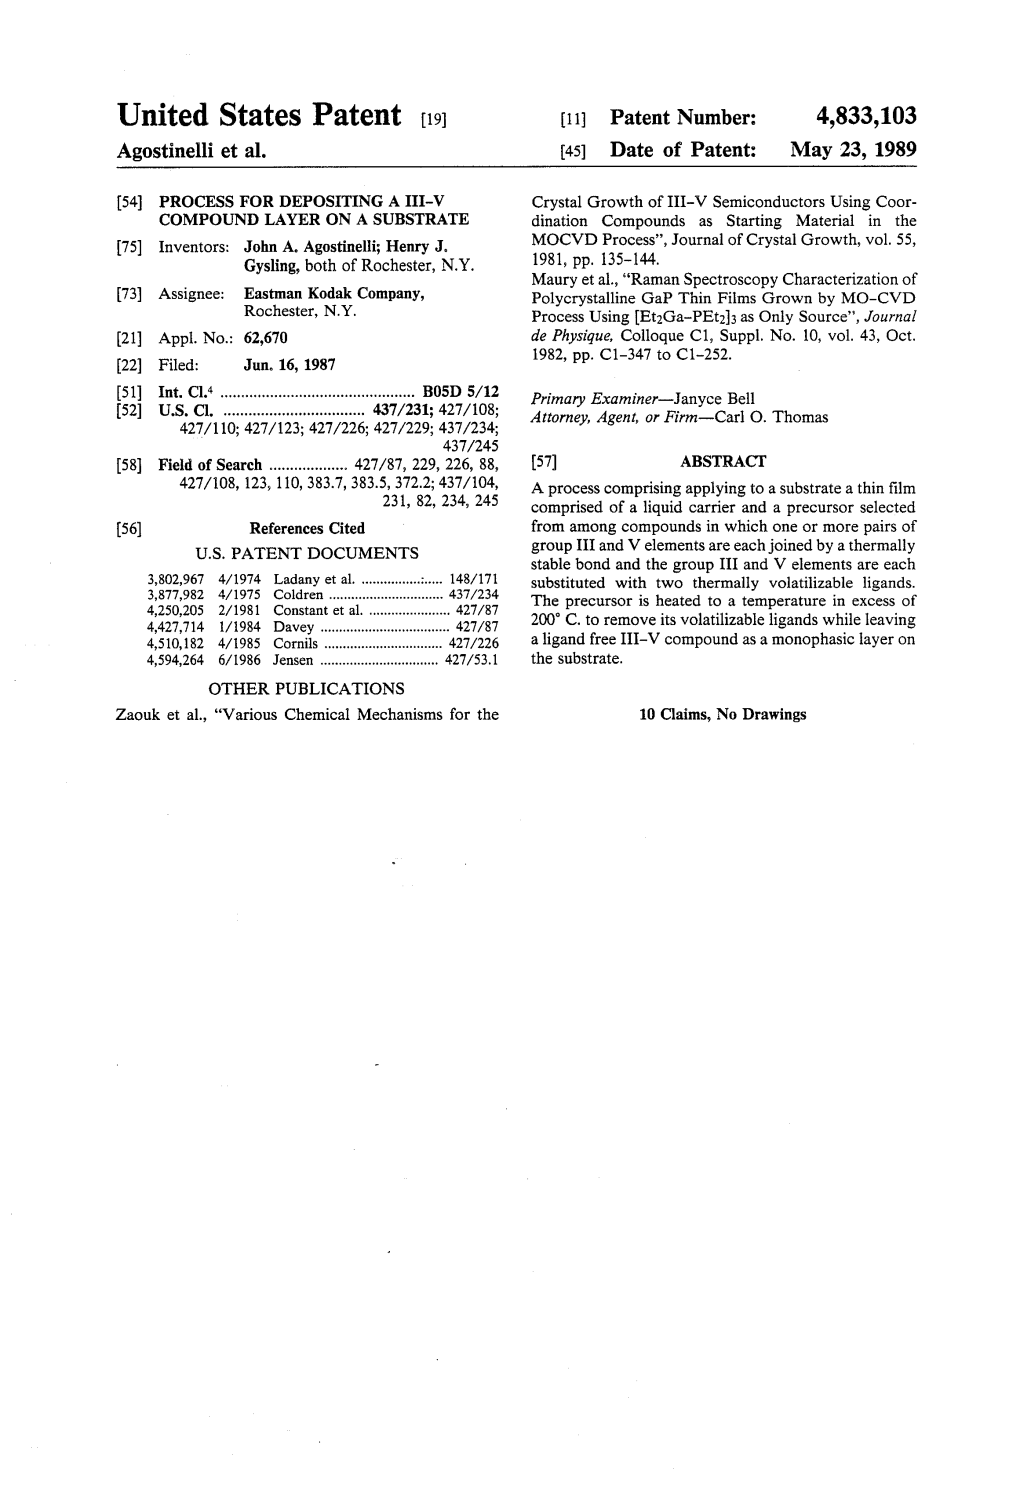 United States Patent (19) 11 Patent Number: 4,833,103 Agostinelli Et Al